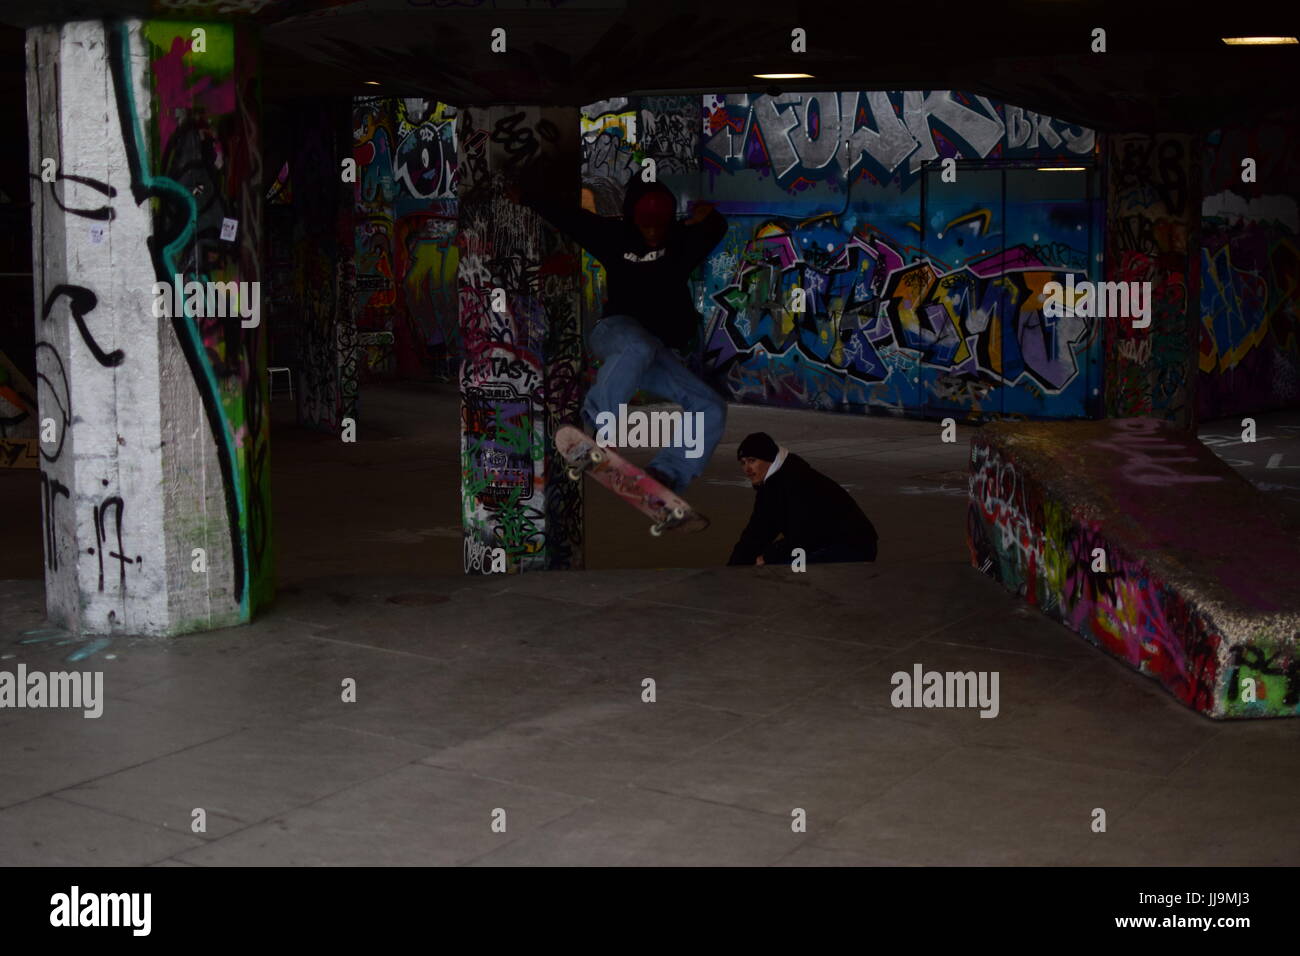 skateboarder in london Stock Photo